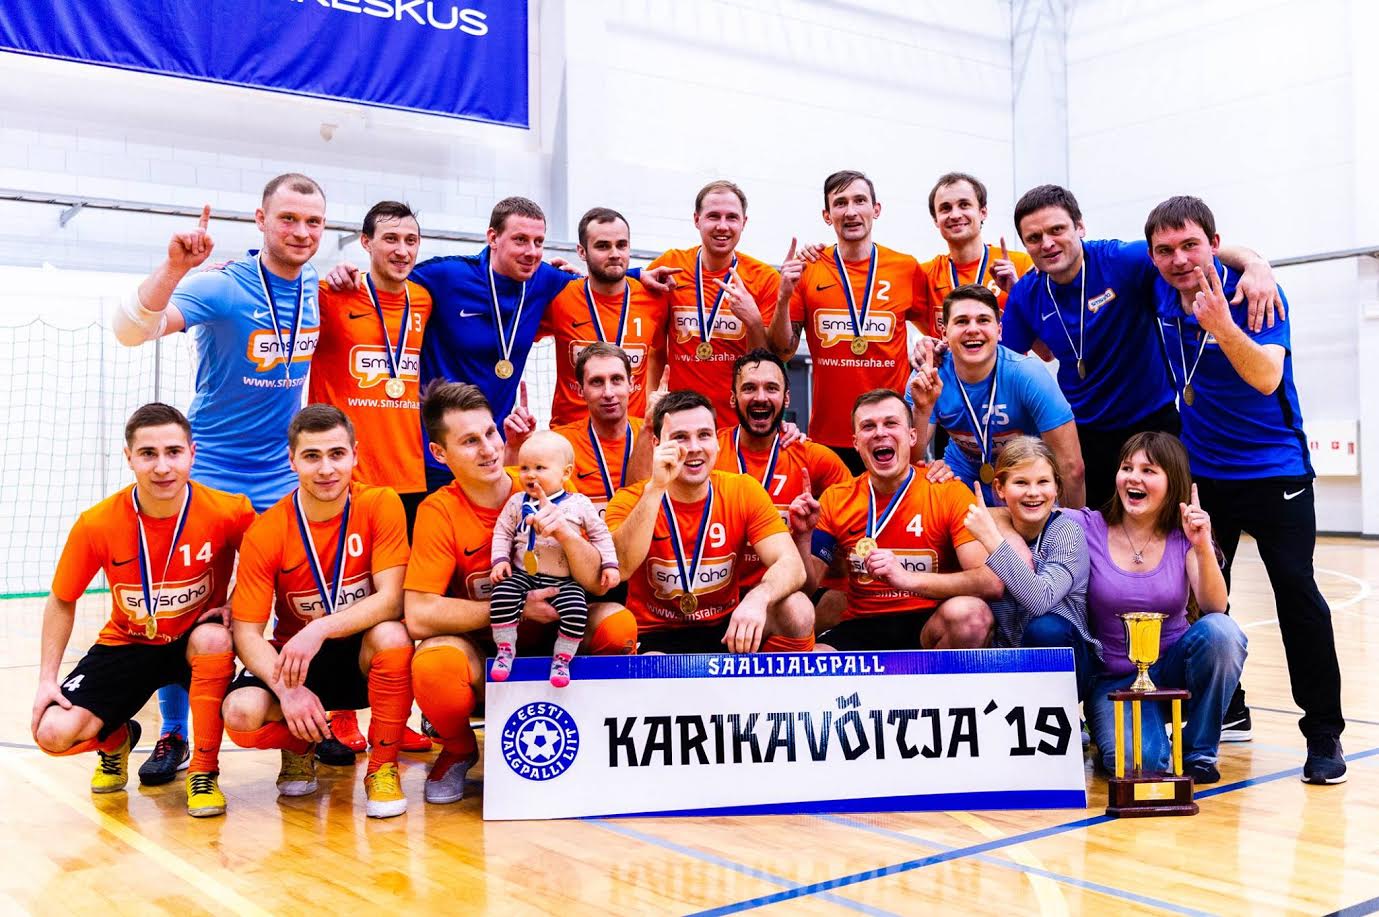 Saalijalgpalli karikavõistluse 2019. aasta võitjavõistkond Viimsi FC Smsraha. Foto: CHRISTER PALU / EJL.